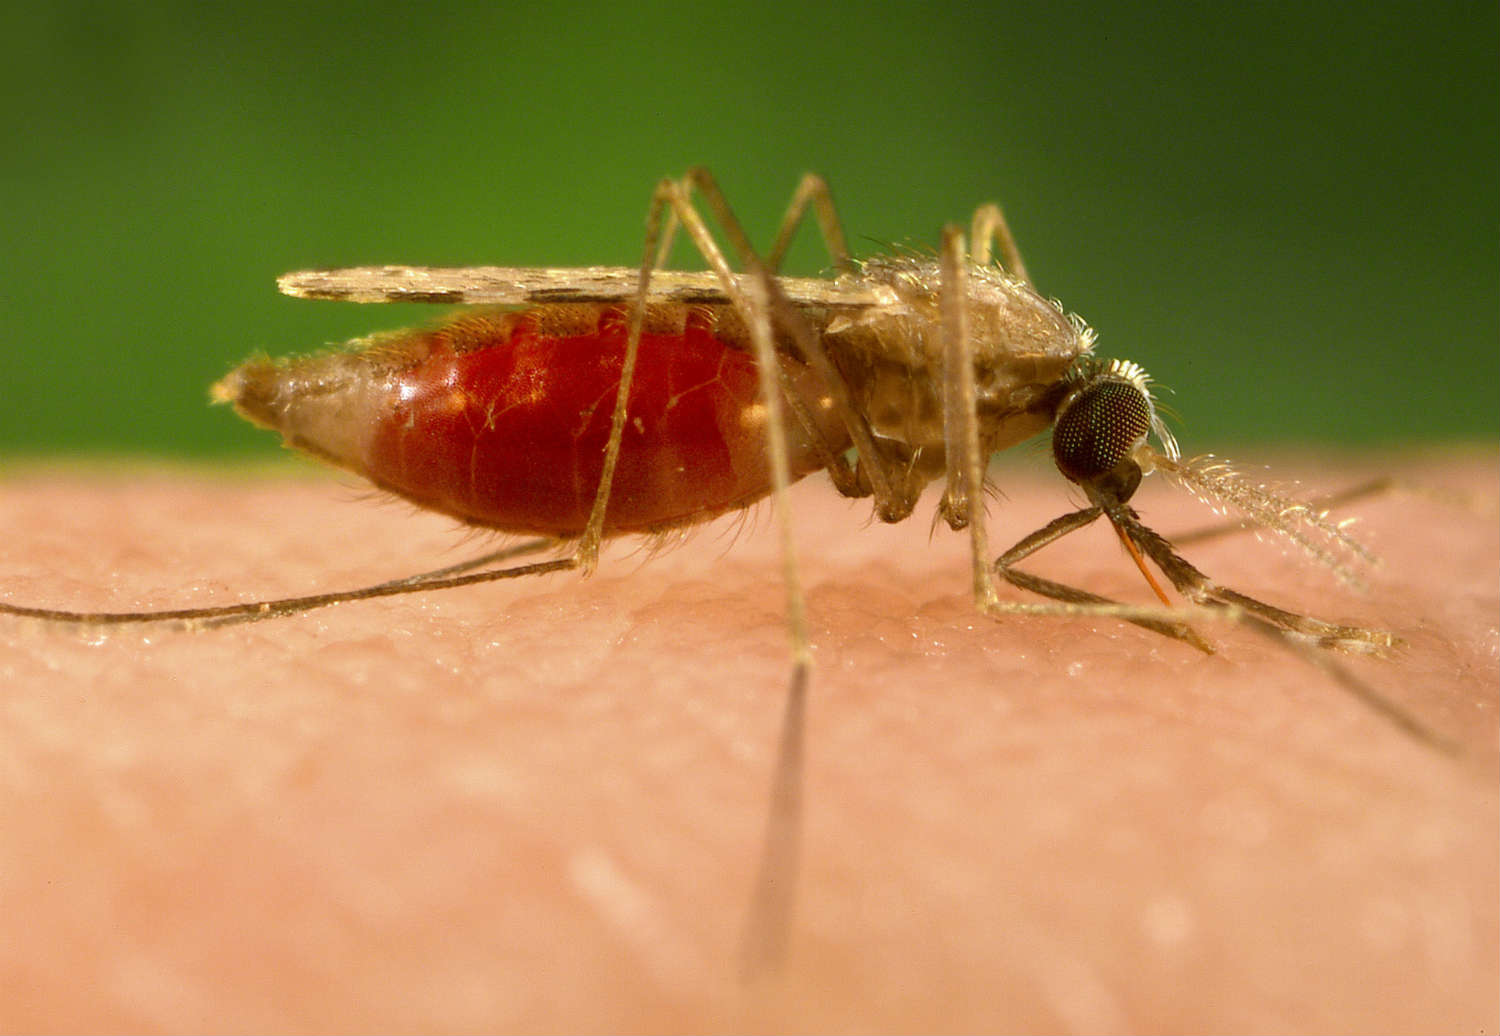 140306-malaria-mosquito